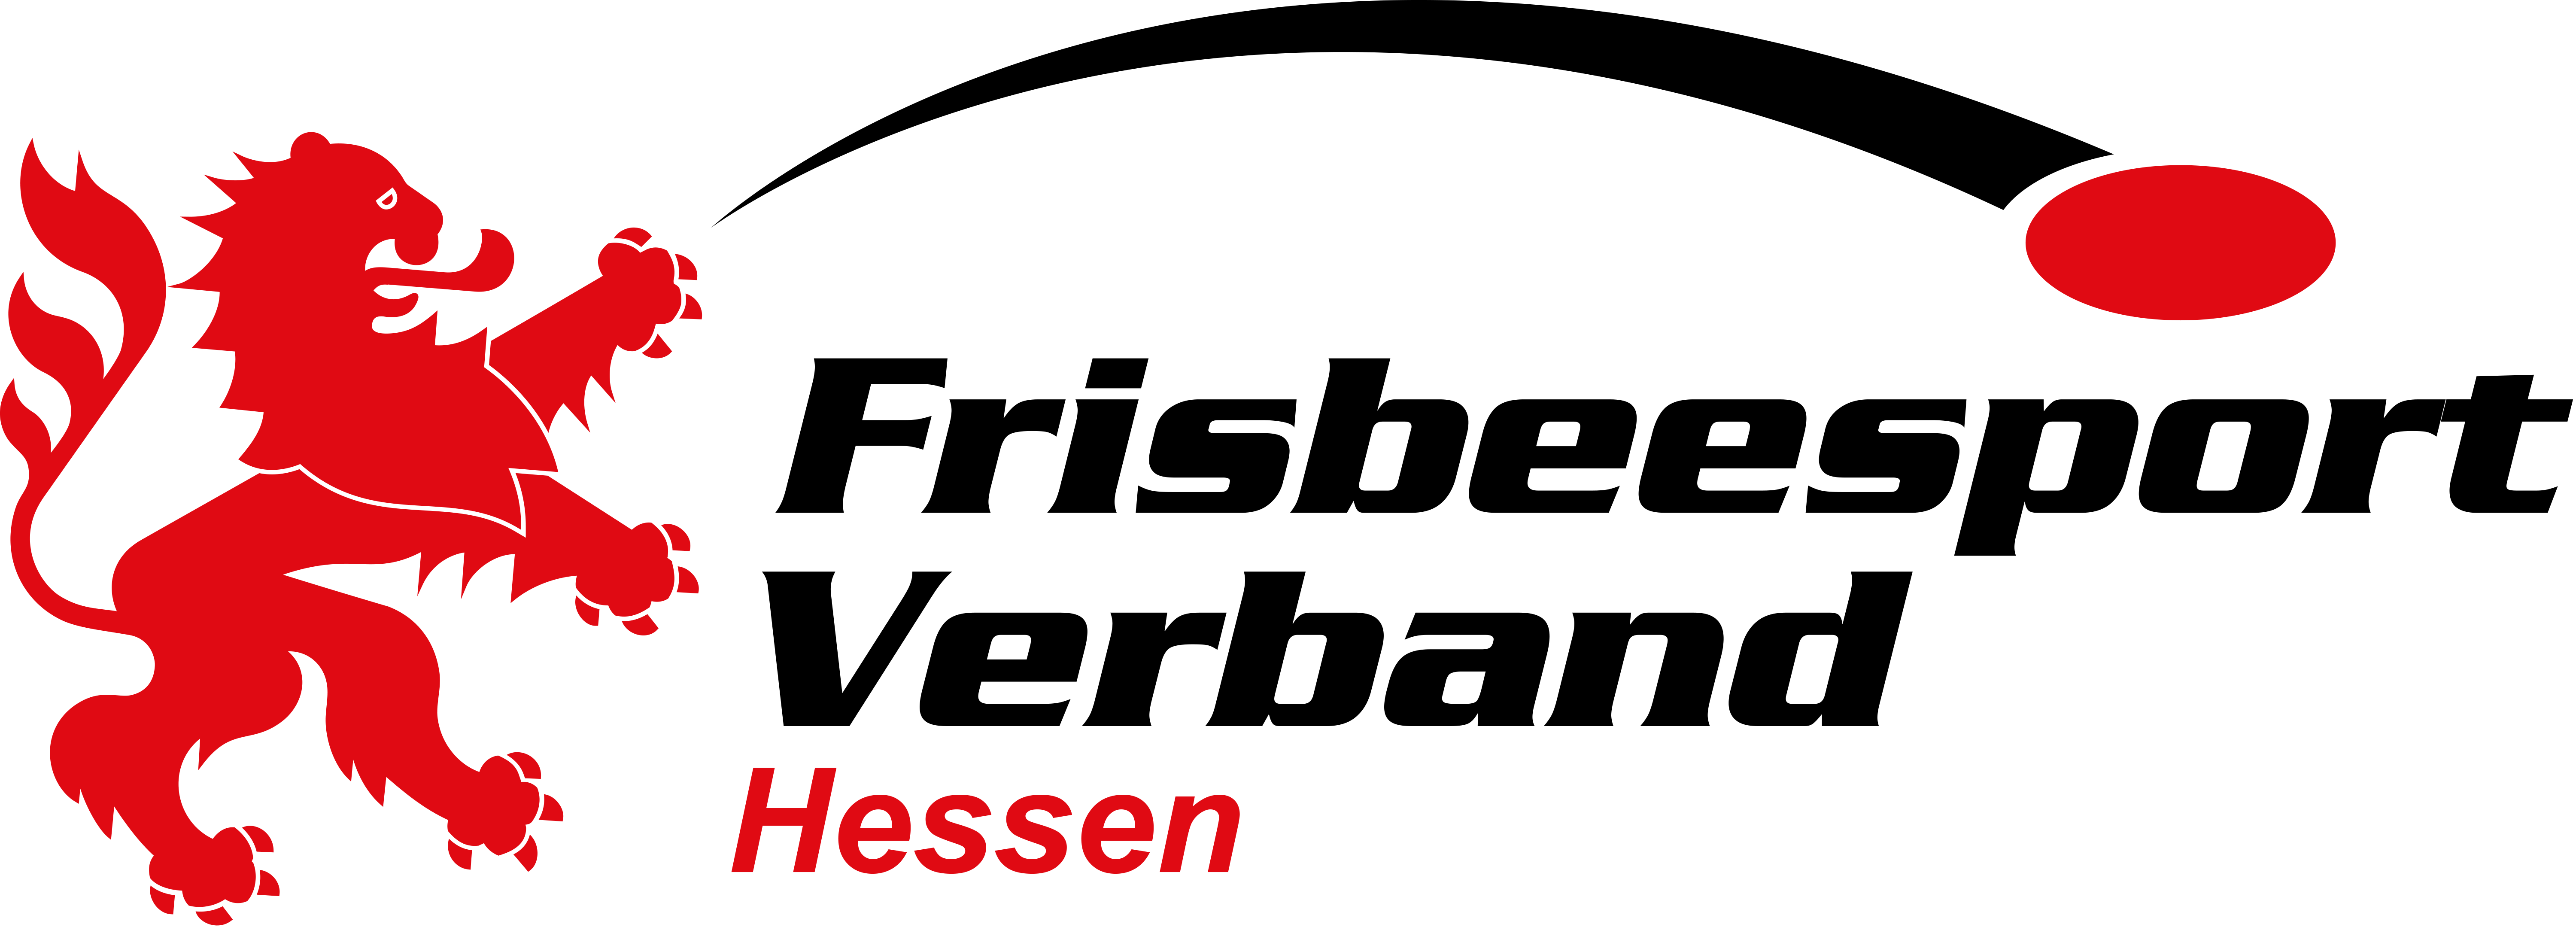 Frisbeesport Landesverband Hessen e.V.